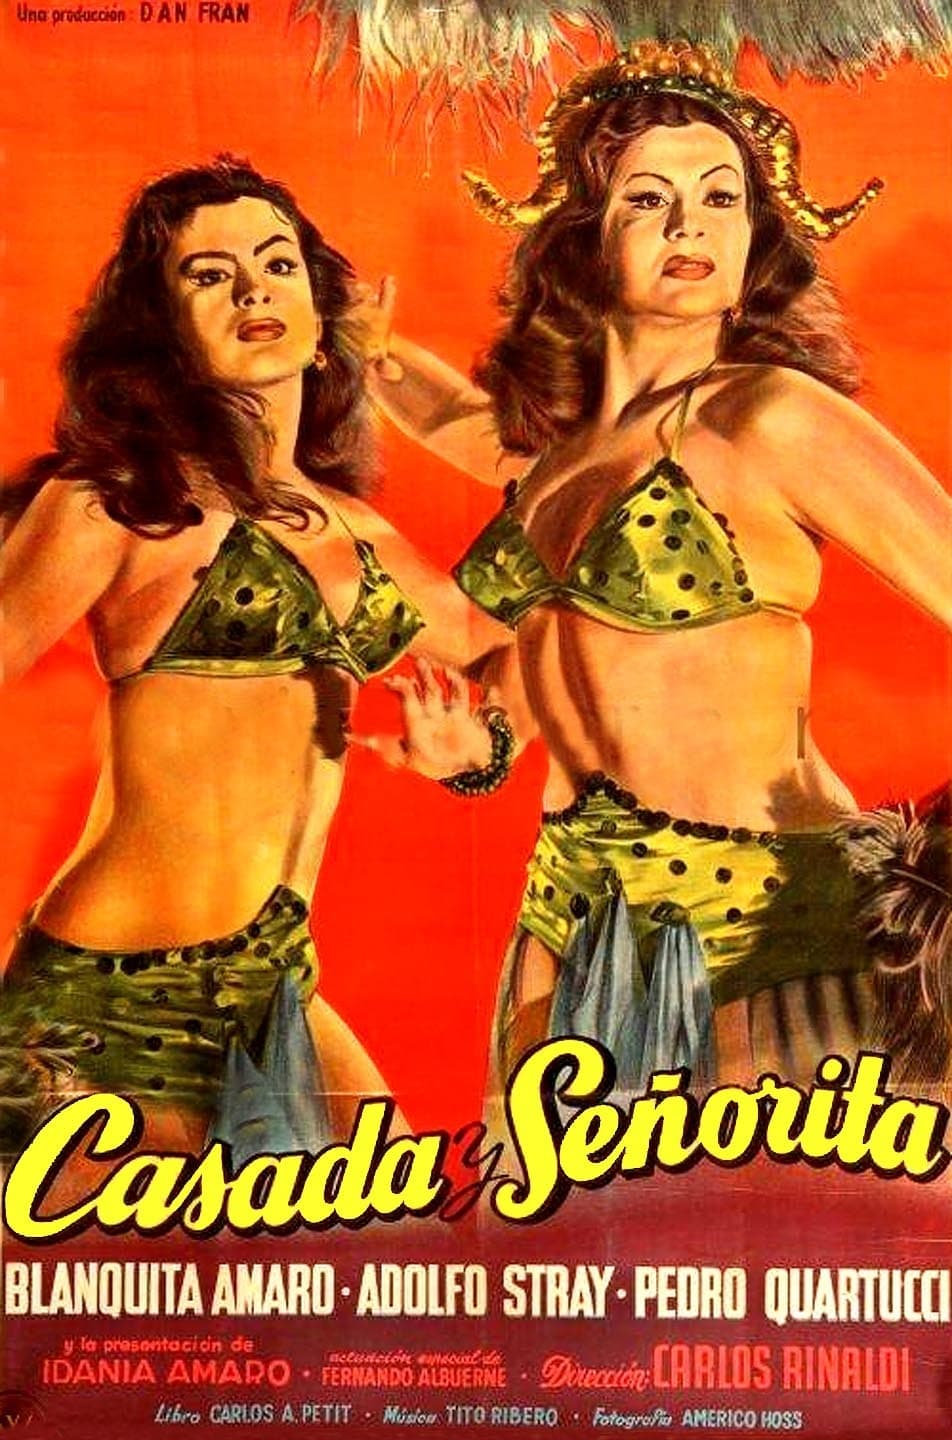 Casada y señorita (1954)